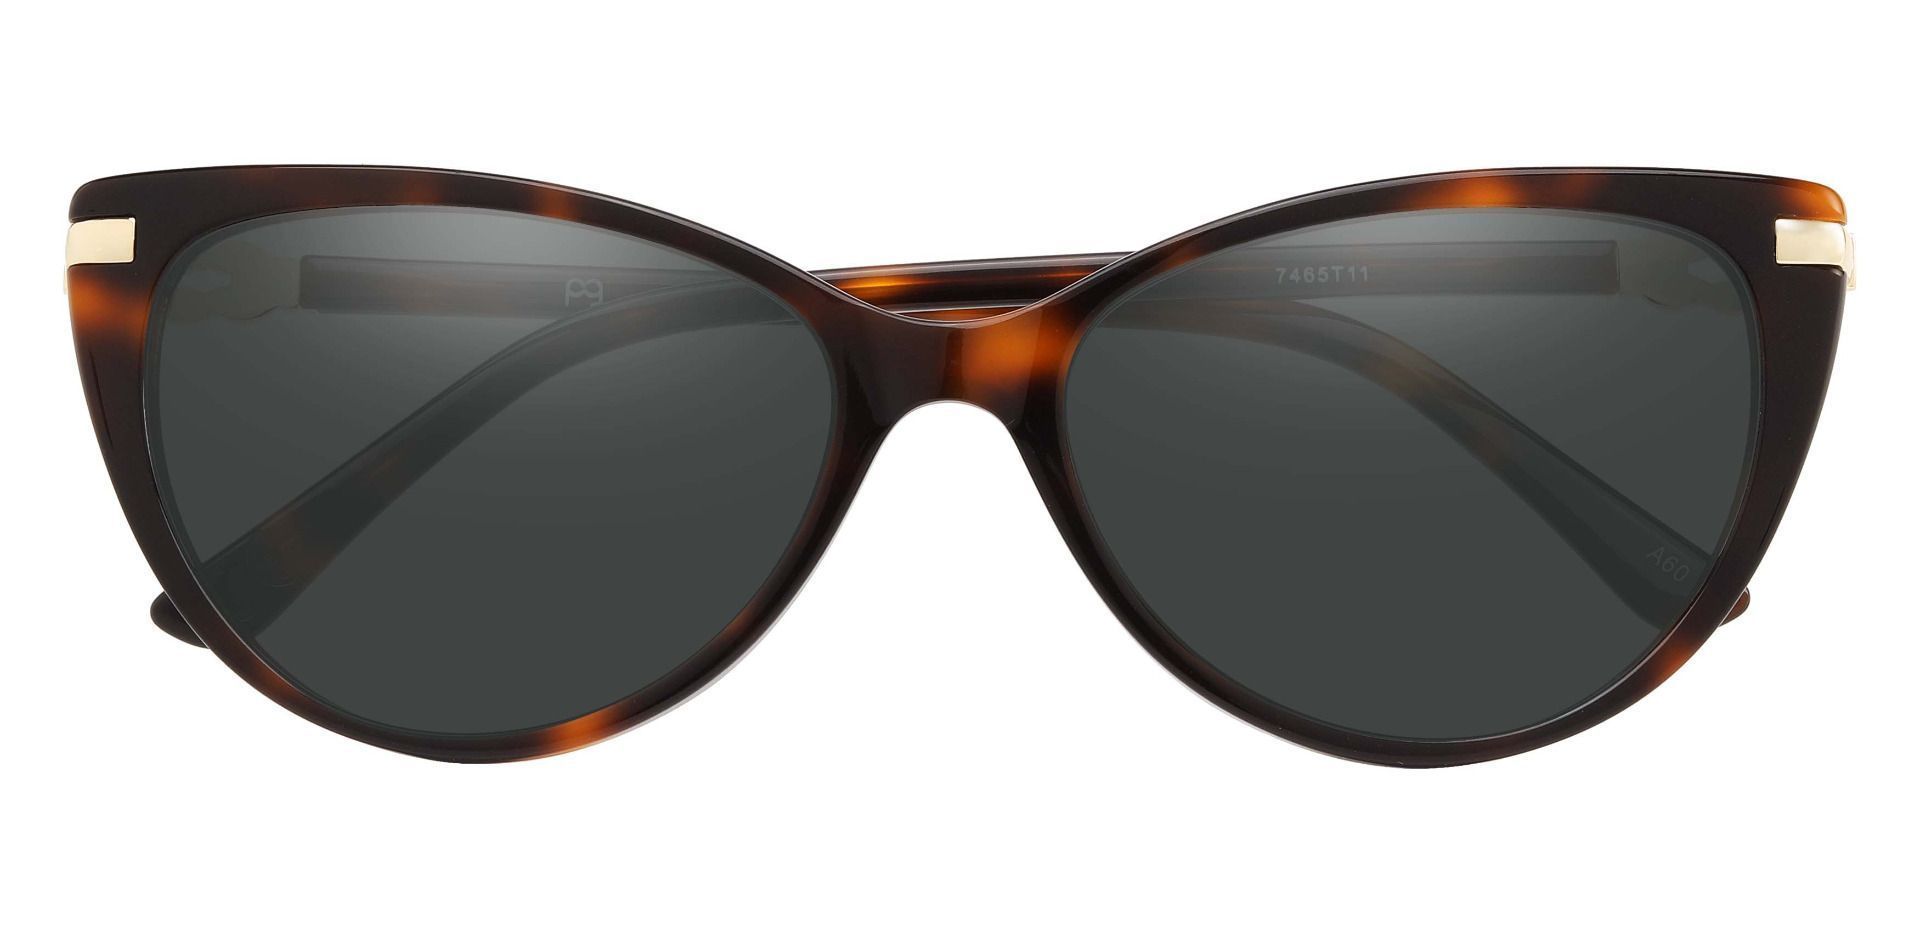 Starla Cat Eye Reading Sunglasses - Tortoise Frame With Gray Lenses